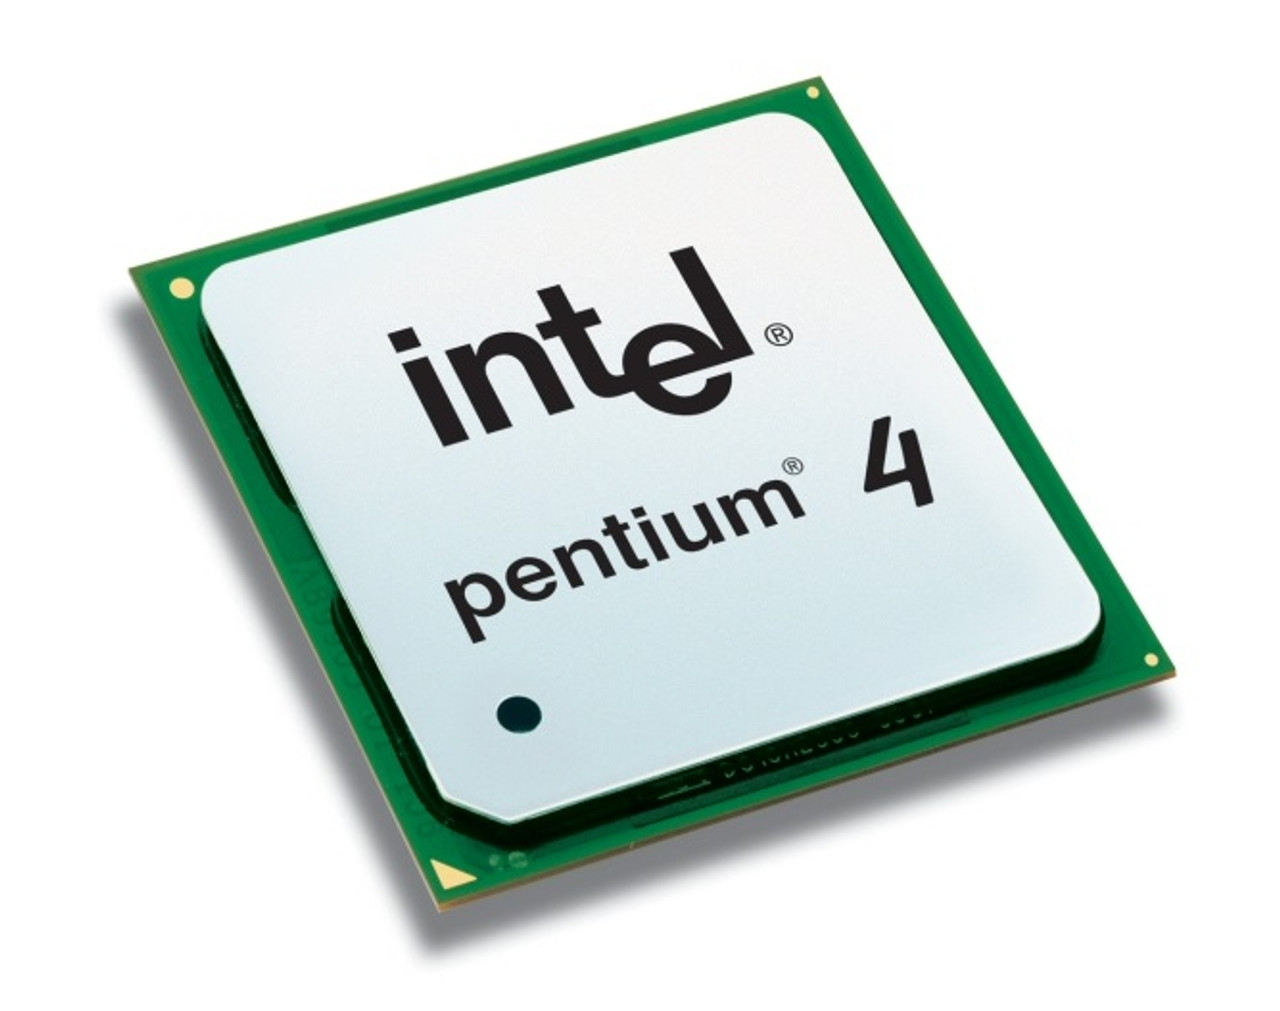 SL7L9 - Intel Pentium 4 560/560J 3.60GHz 800MHz FSB 1MB L2 Cache Socket PLGA775 Processor